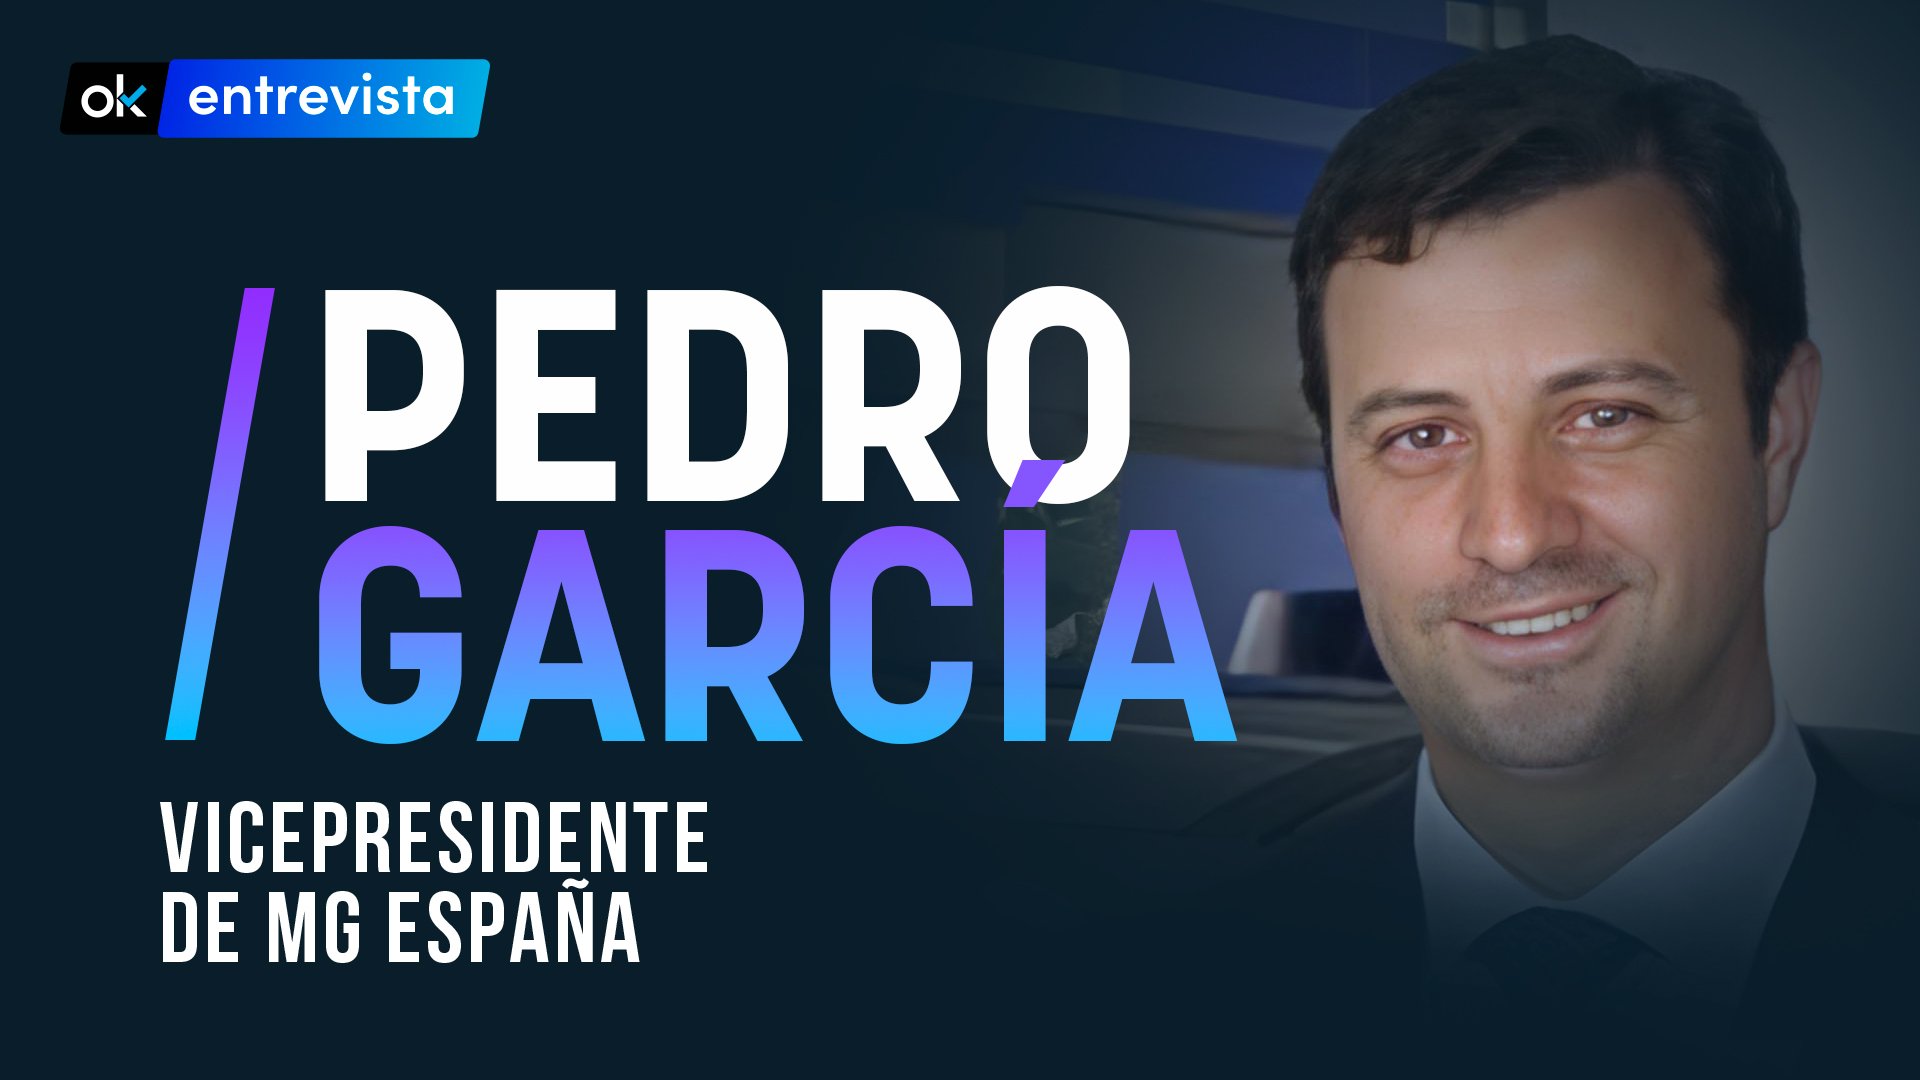 Pedro García, vicepresidente de MG España